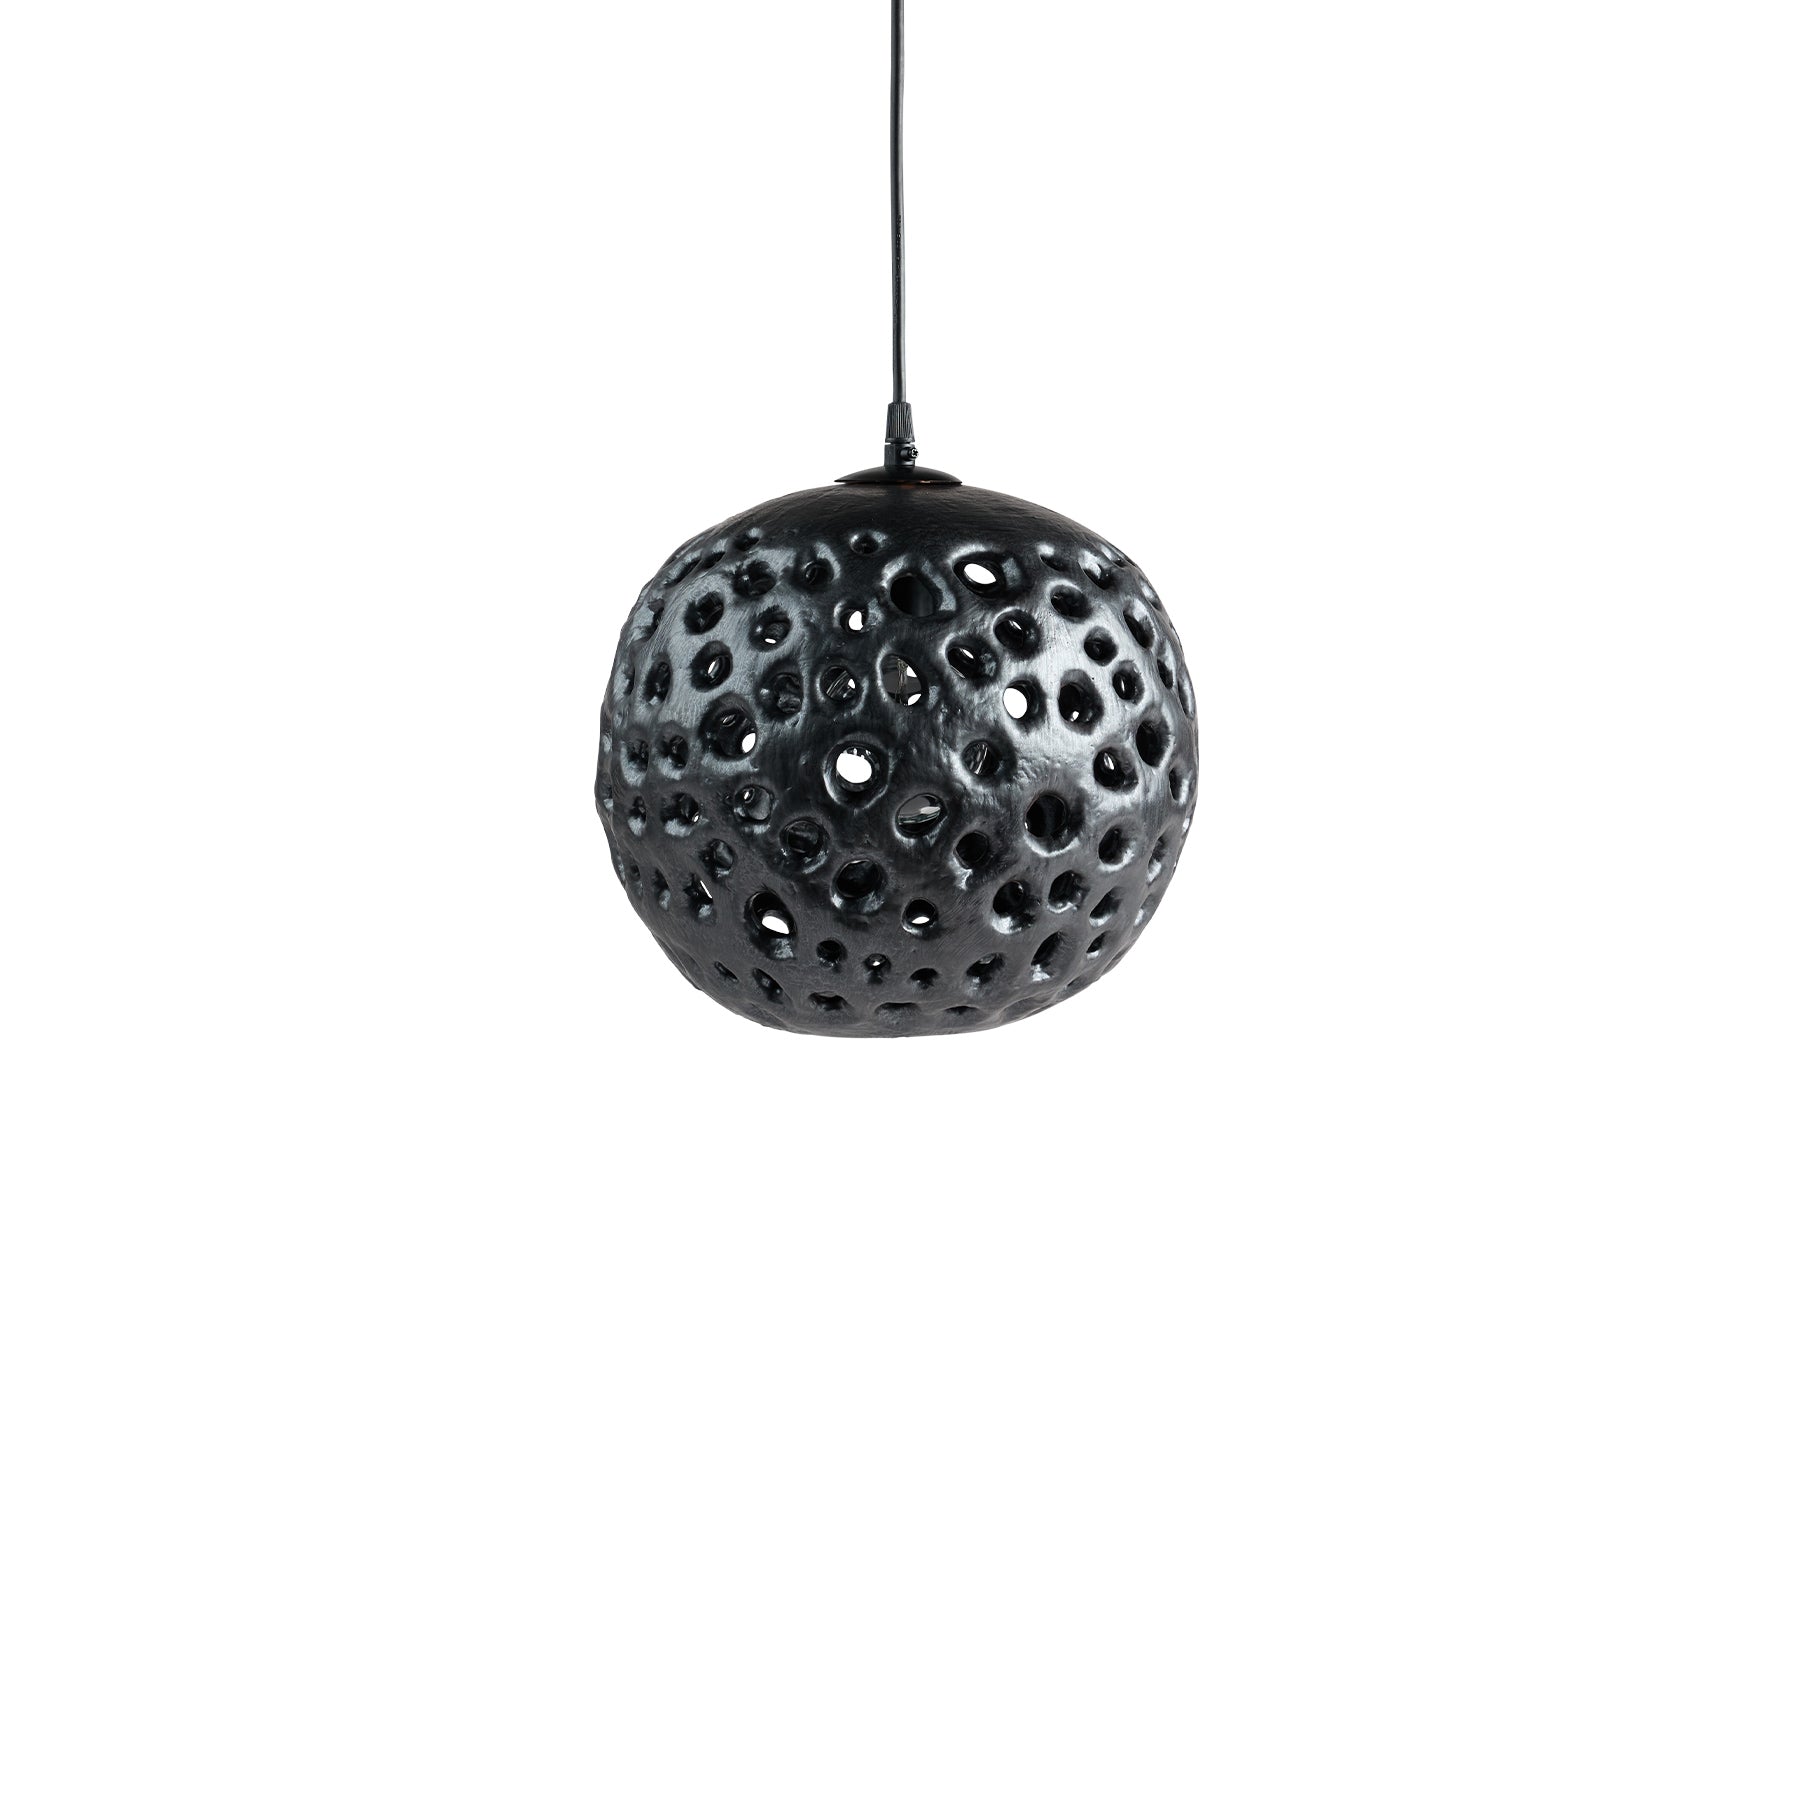 10" Ceramic Hanging Lantern in Black Zoom Image 1